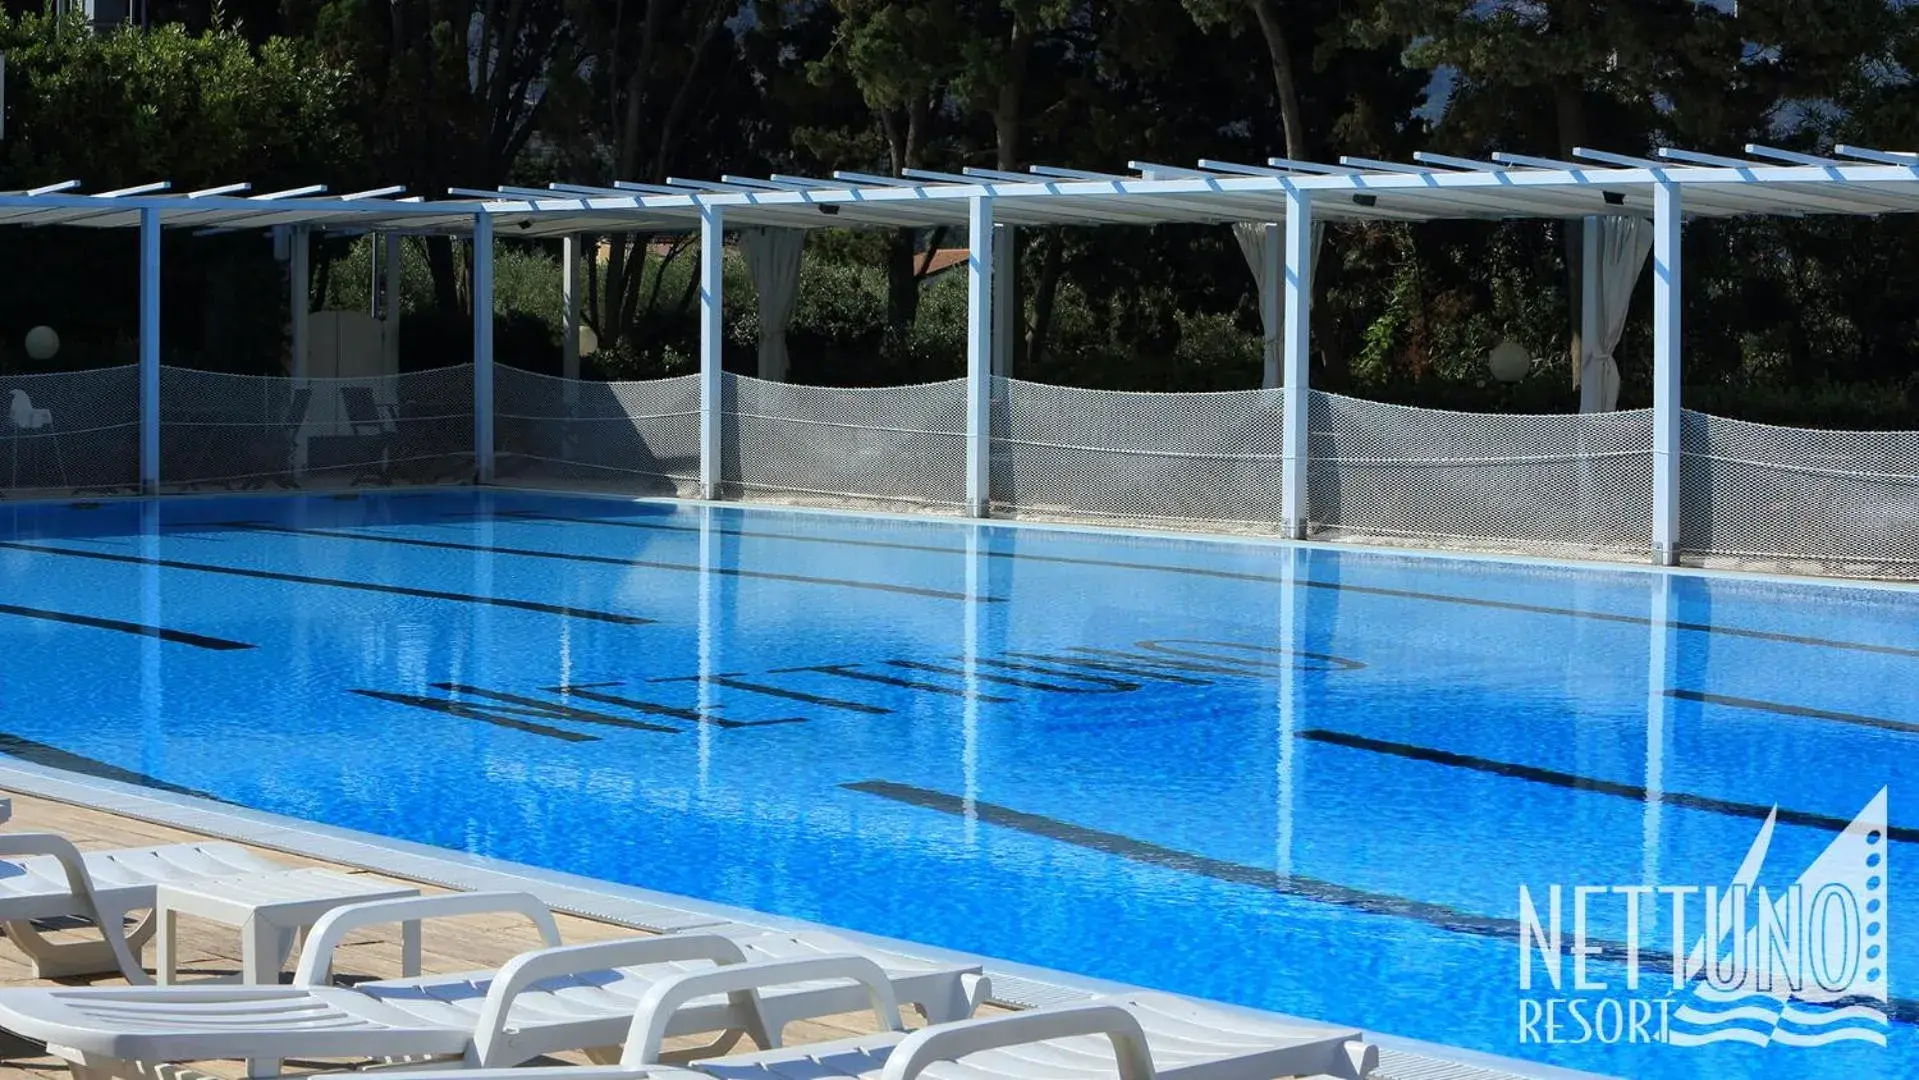 Swimming Pool in Nettuno Resort